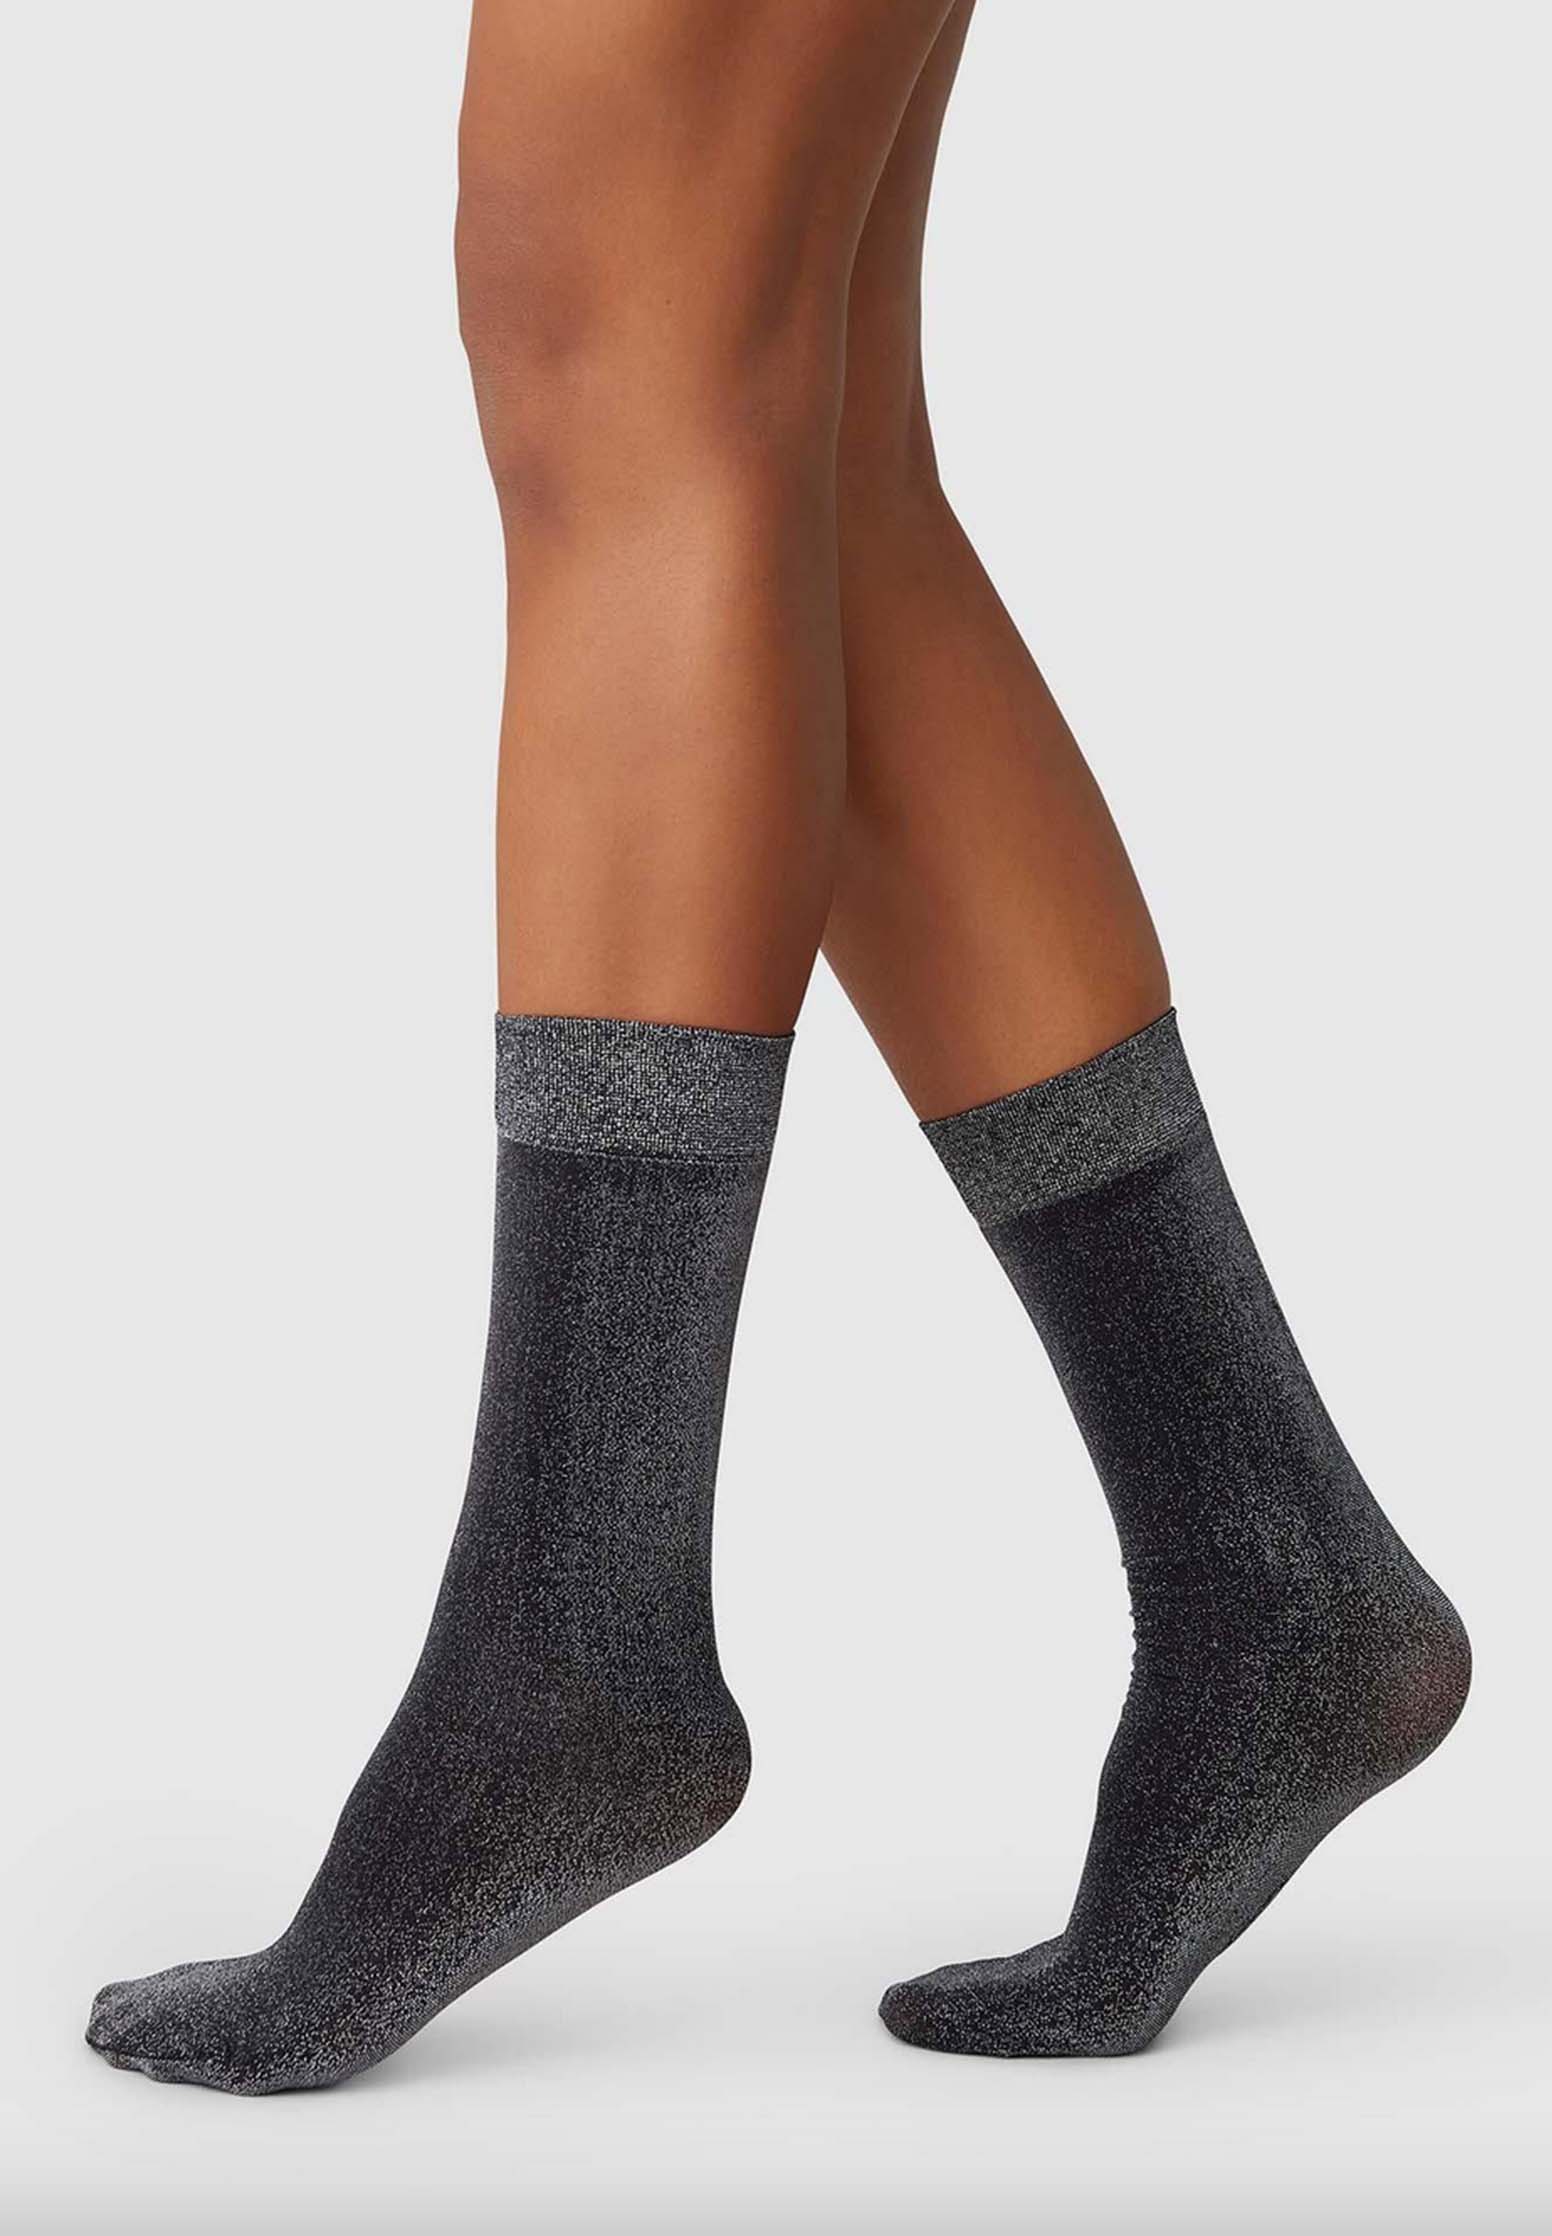 SWEDISH STOCKINGS Shimmery Socks Ines black One Size